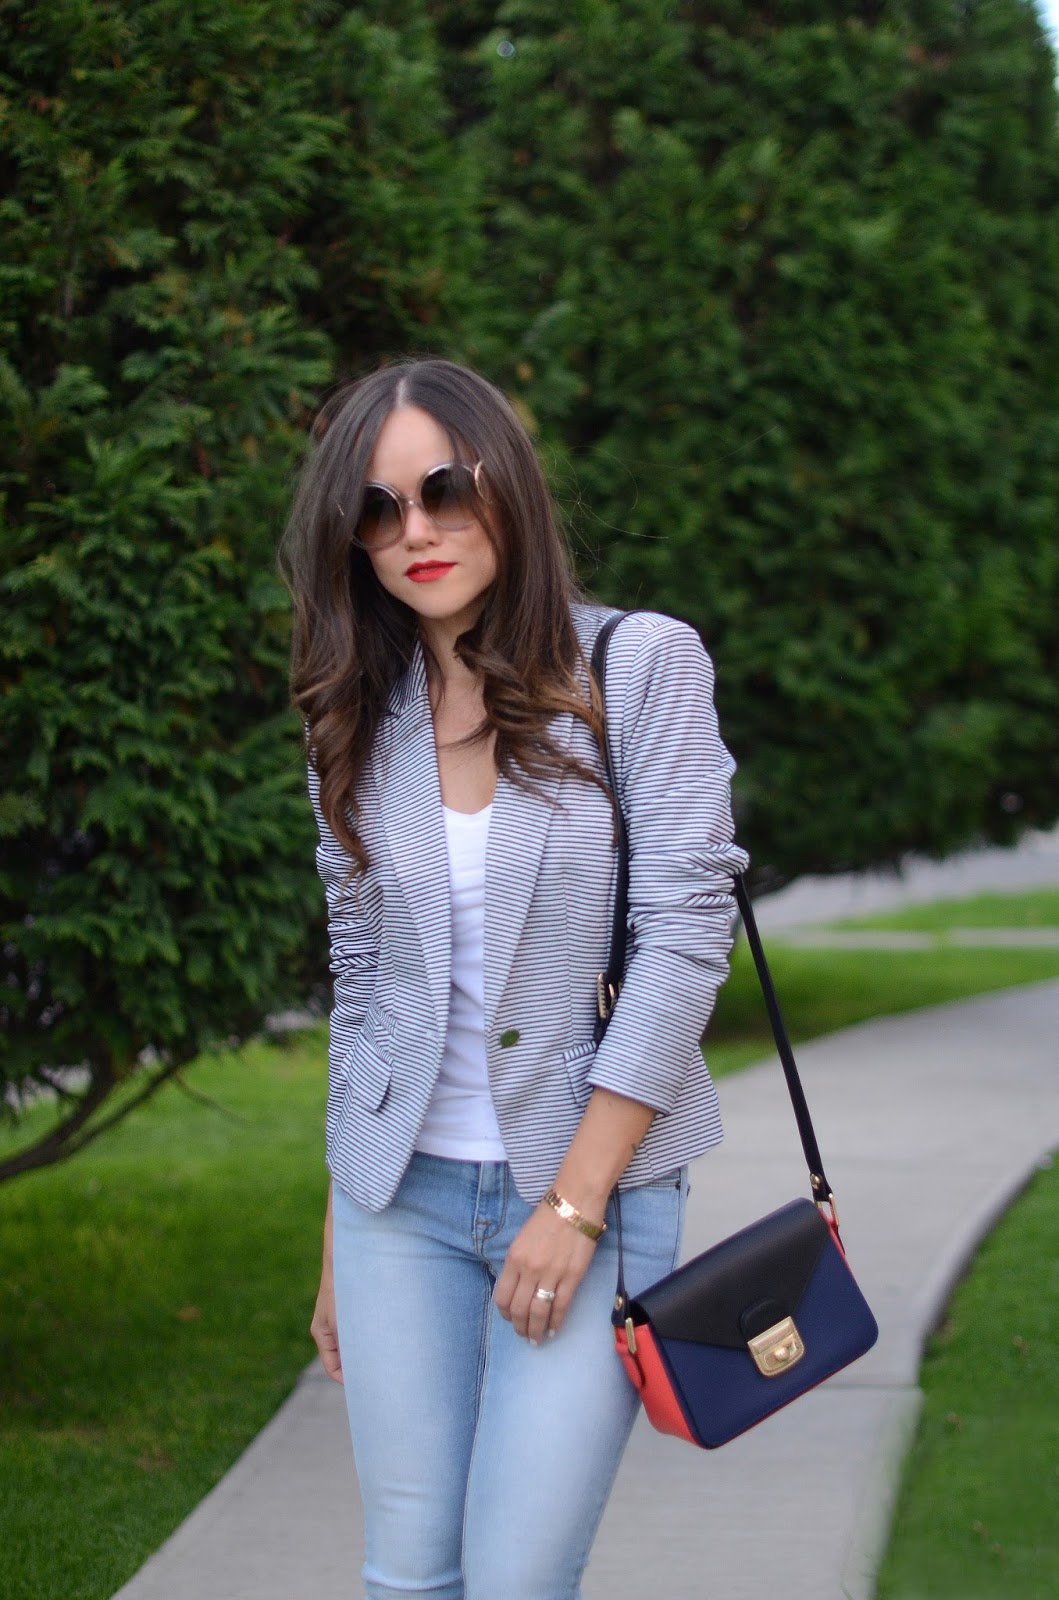 Jeans + Striped blazer | MODA CAPITAL